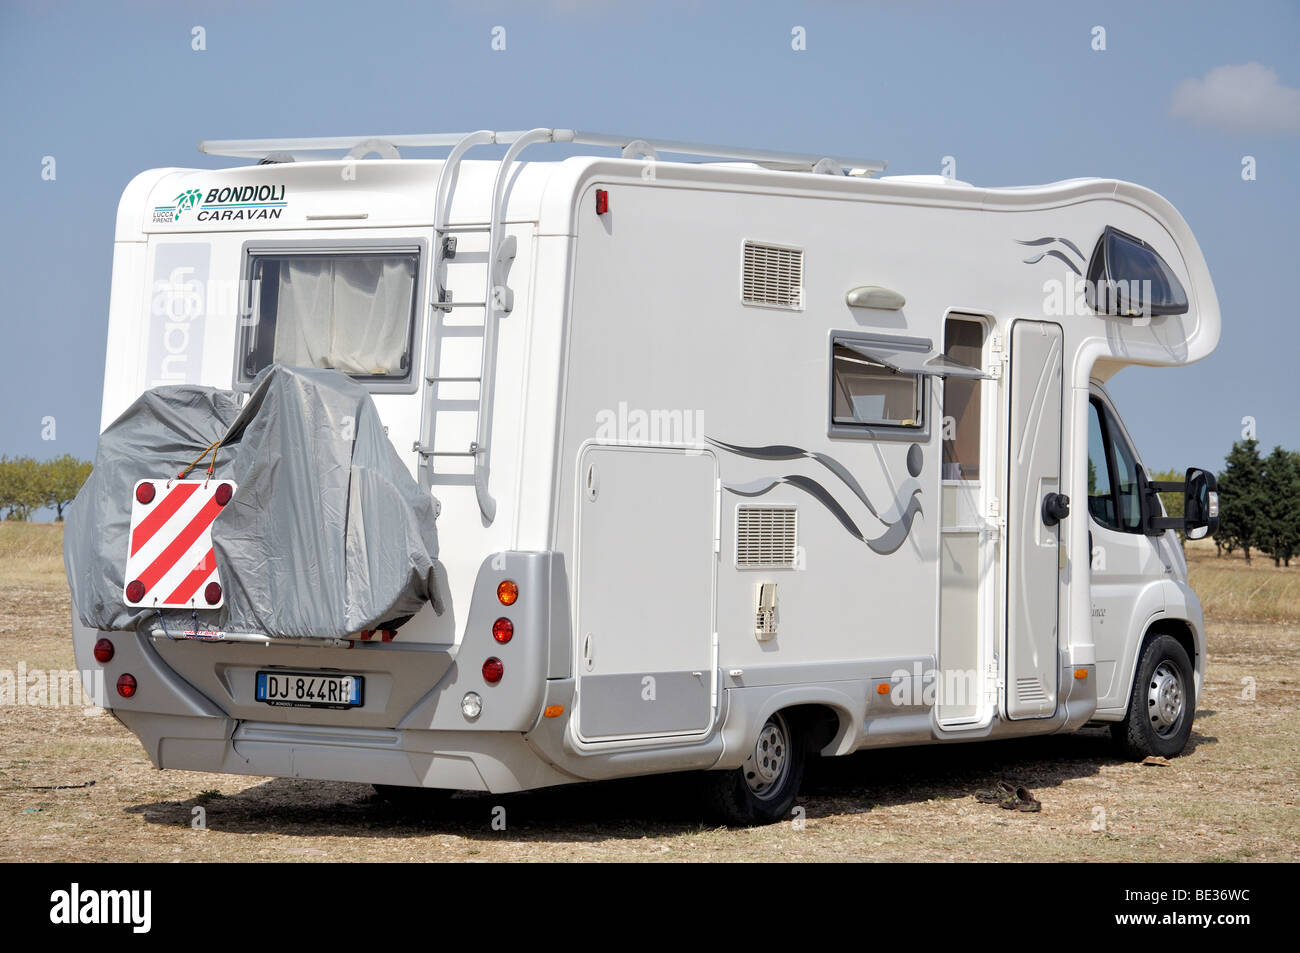 Un camping-car, stationné dans un champ, Andria, province de Barletta-Andria-Trani, Région des Pouilles, Italie Banque D'Images